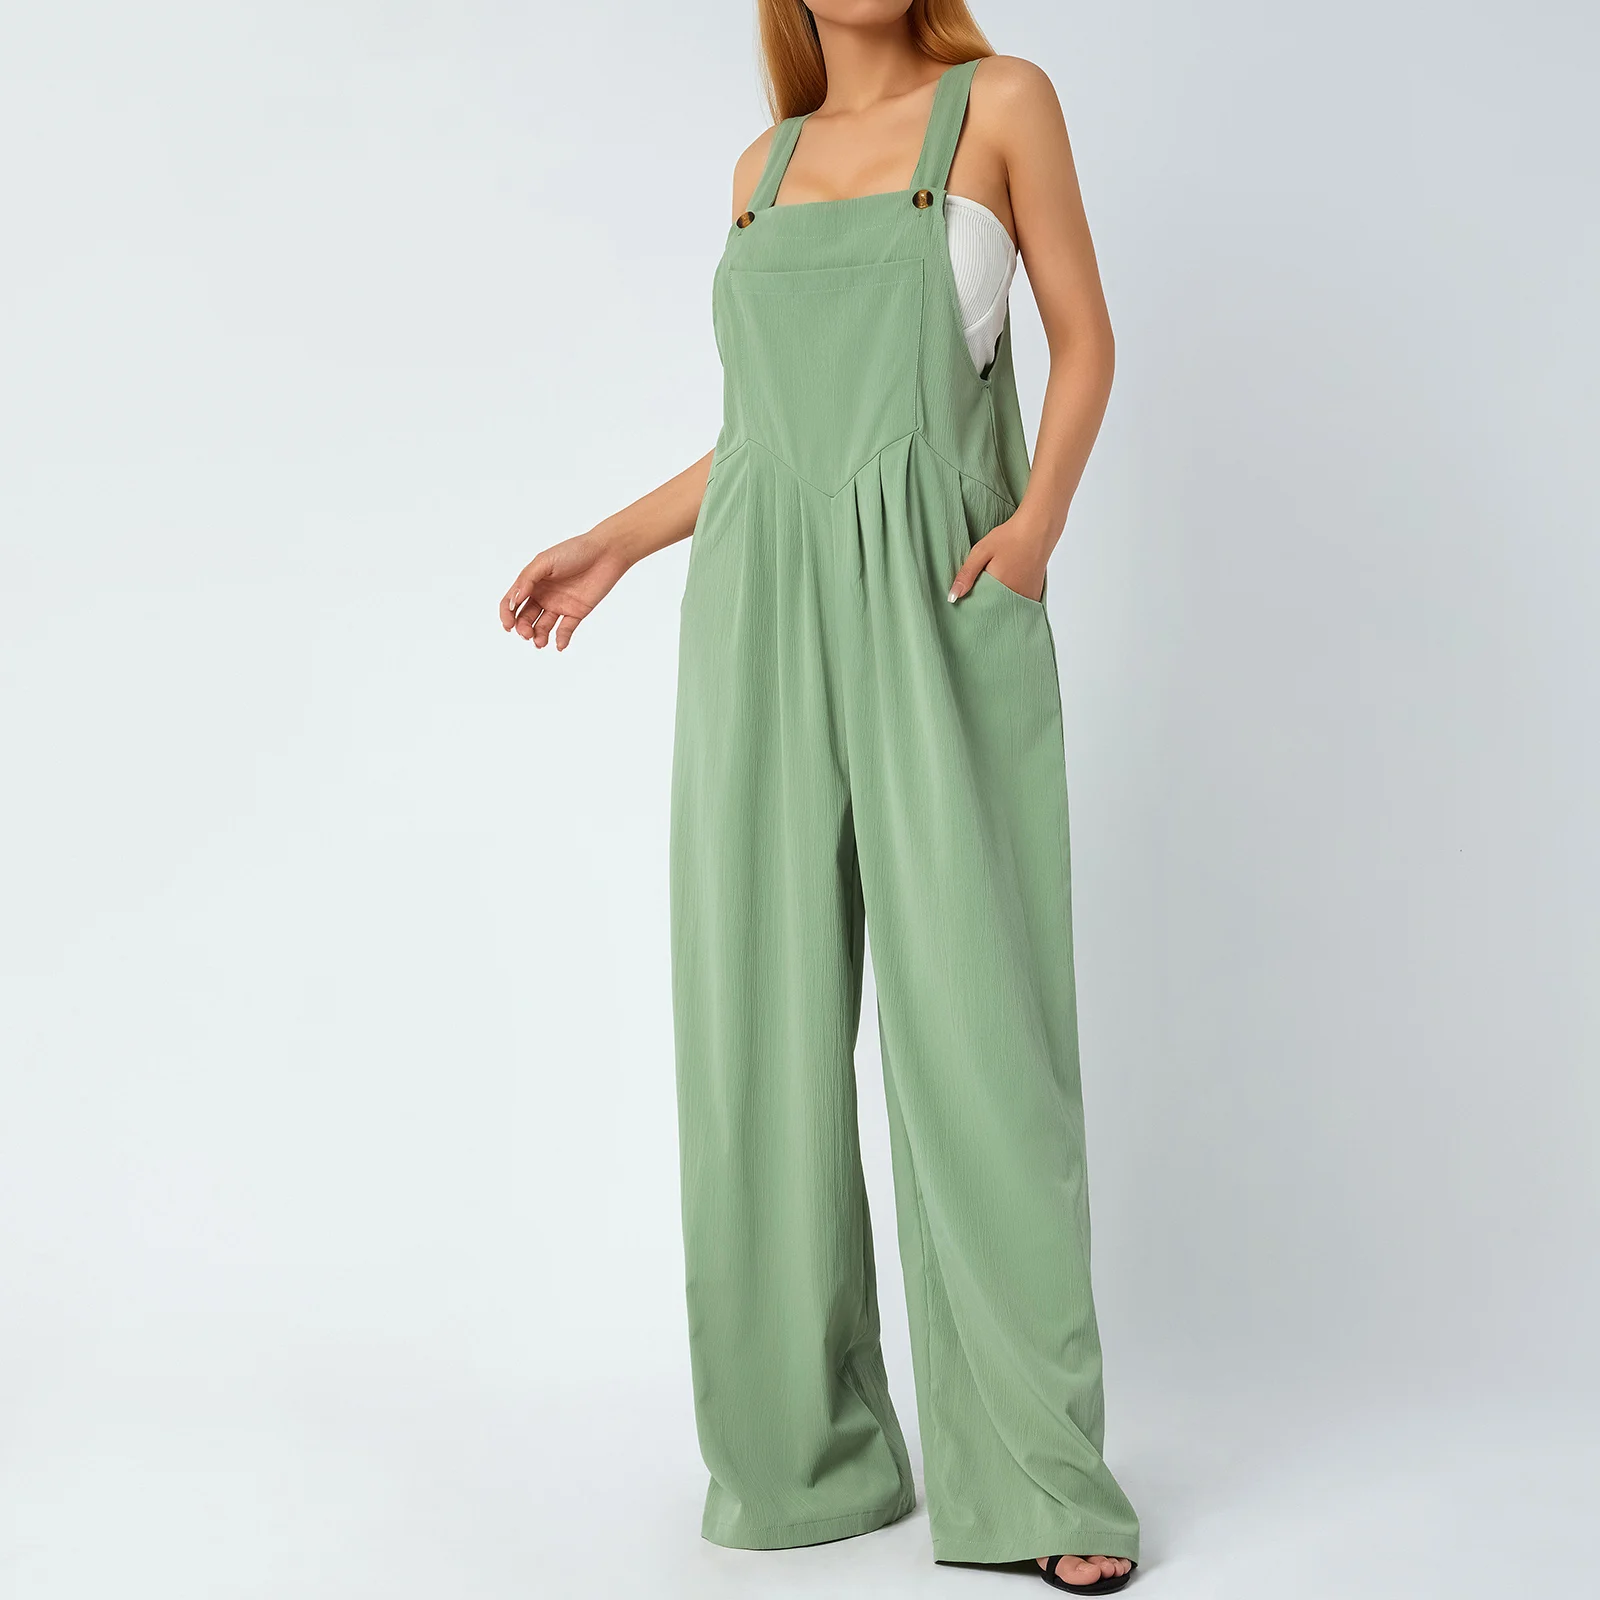 Kadın Yaz Rahat Düğmeler Geniş Bacak Askı Tulum Cepler ile Moda Düz Renk Tulumlar Streetwear Kadın Pantolon Görüntü 2